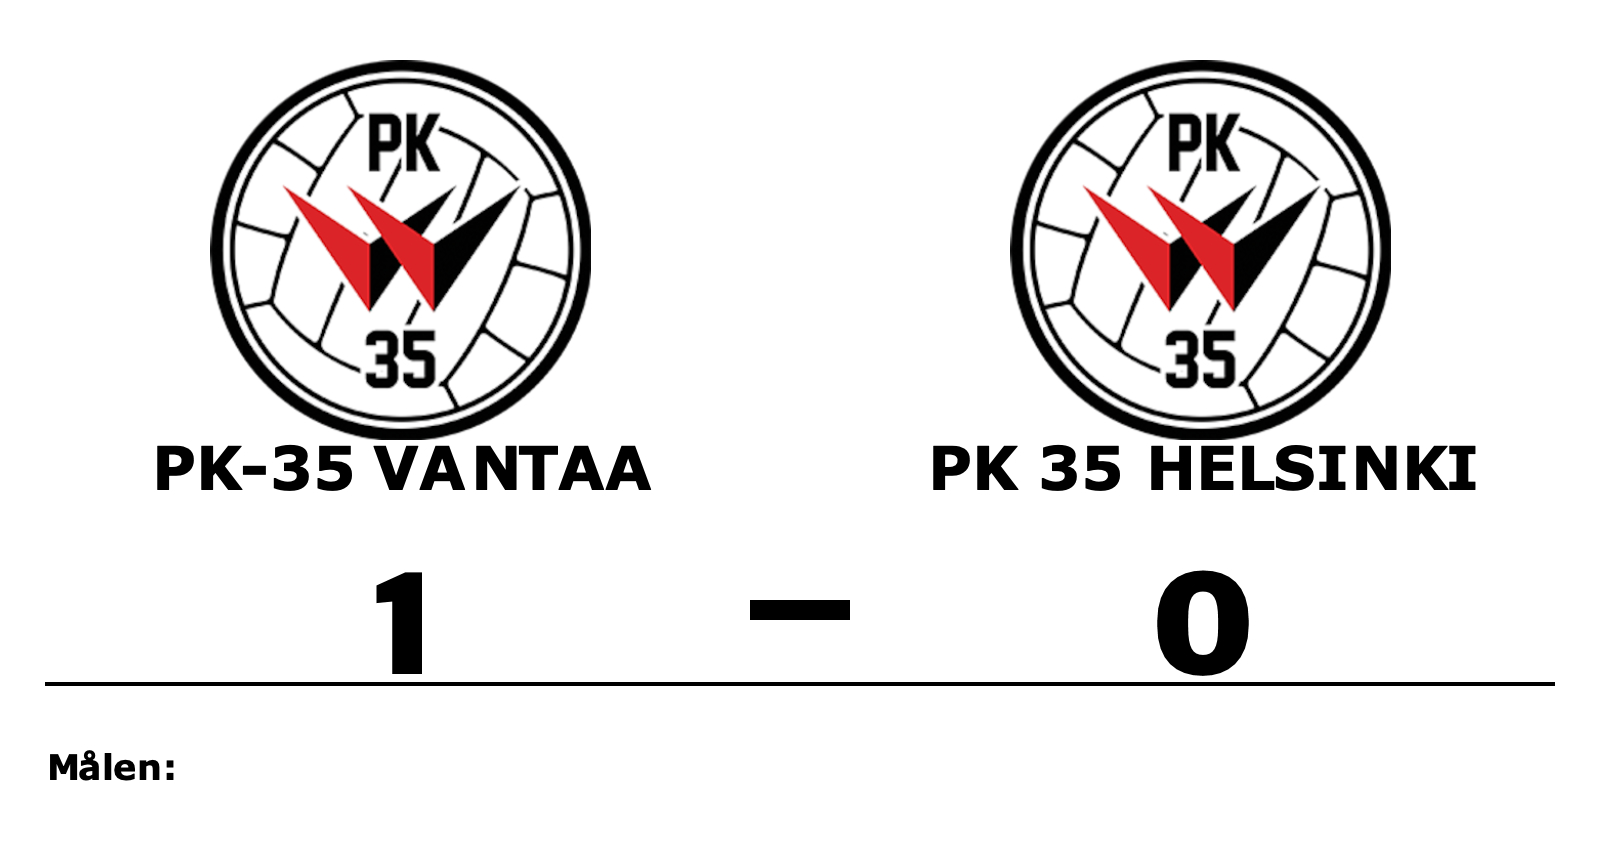 PK-35 Vantaa vann mot PK 35 Helsinki